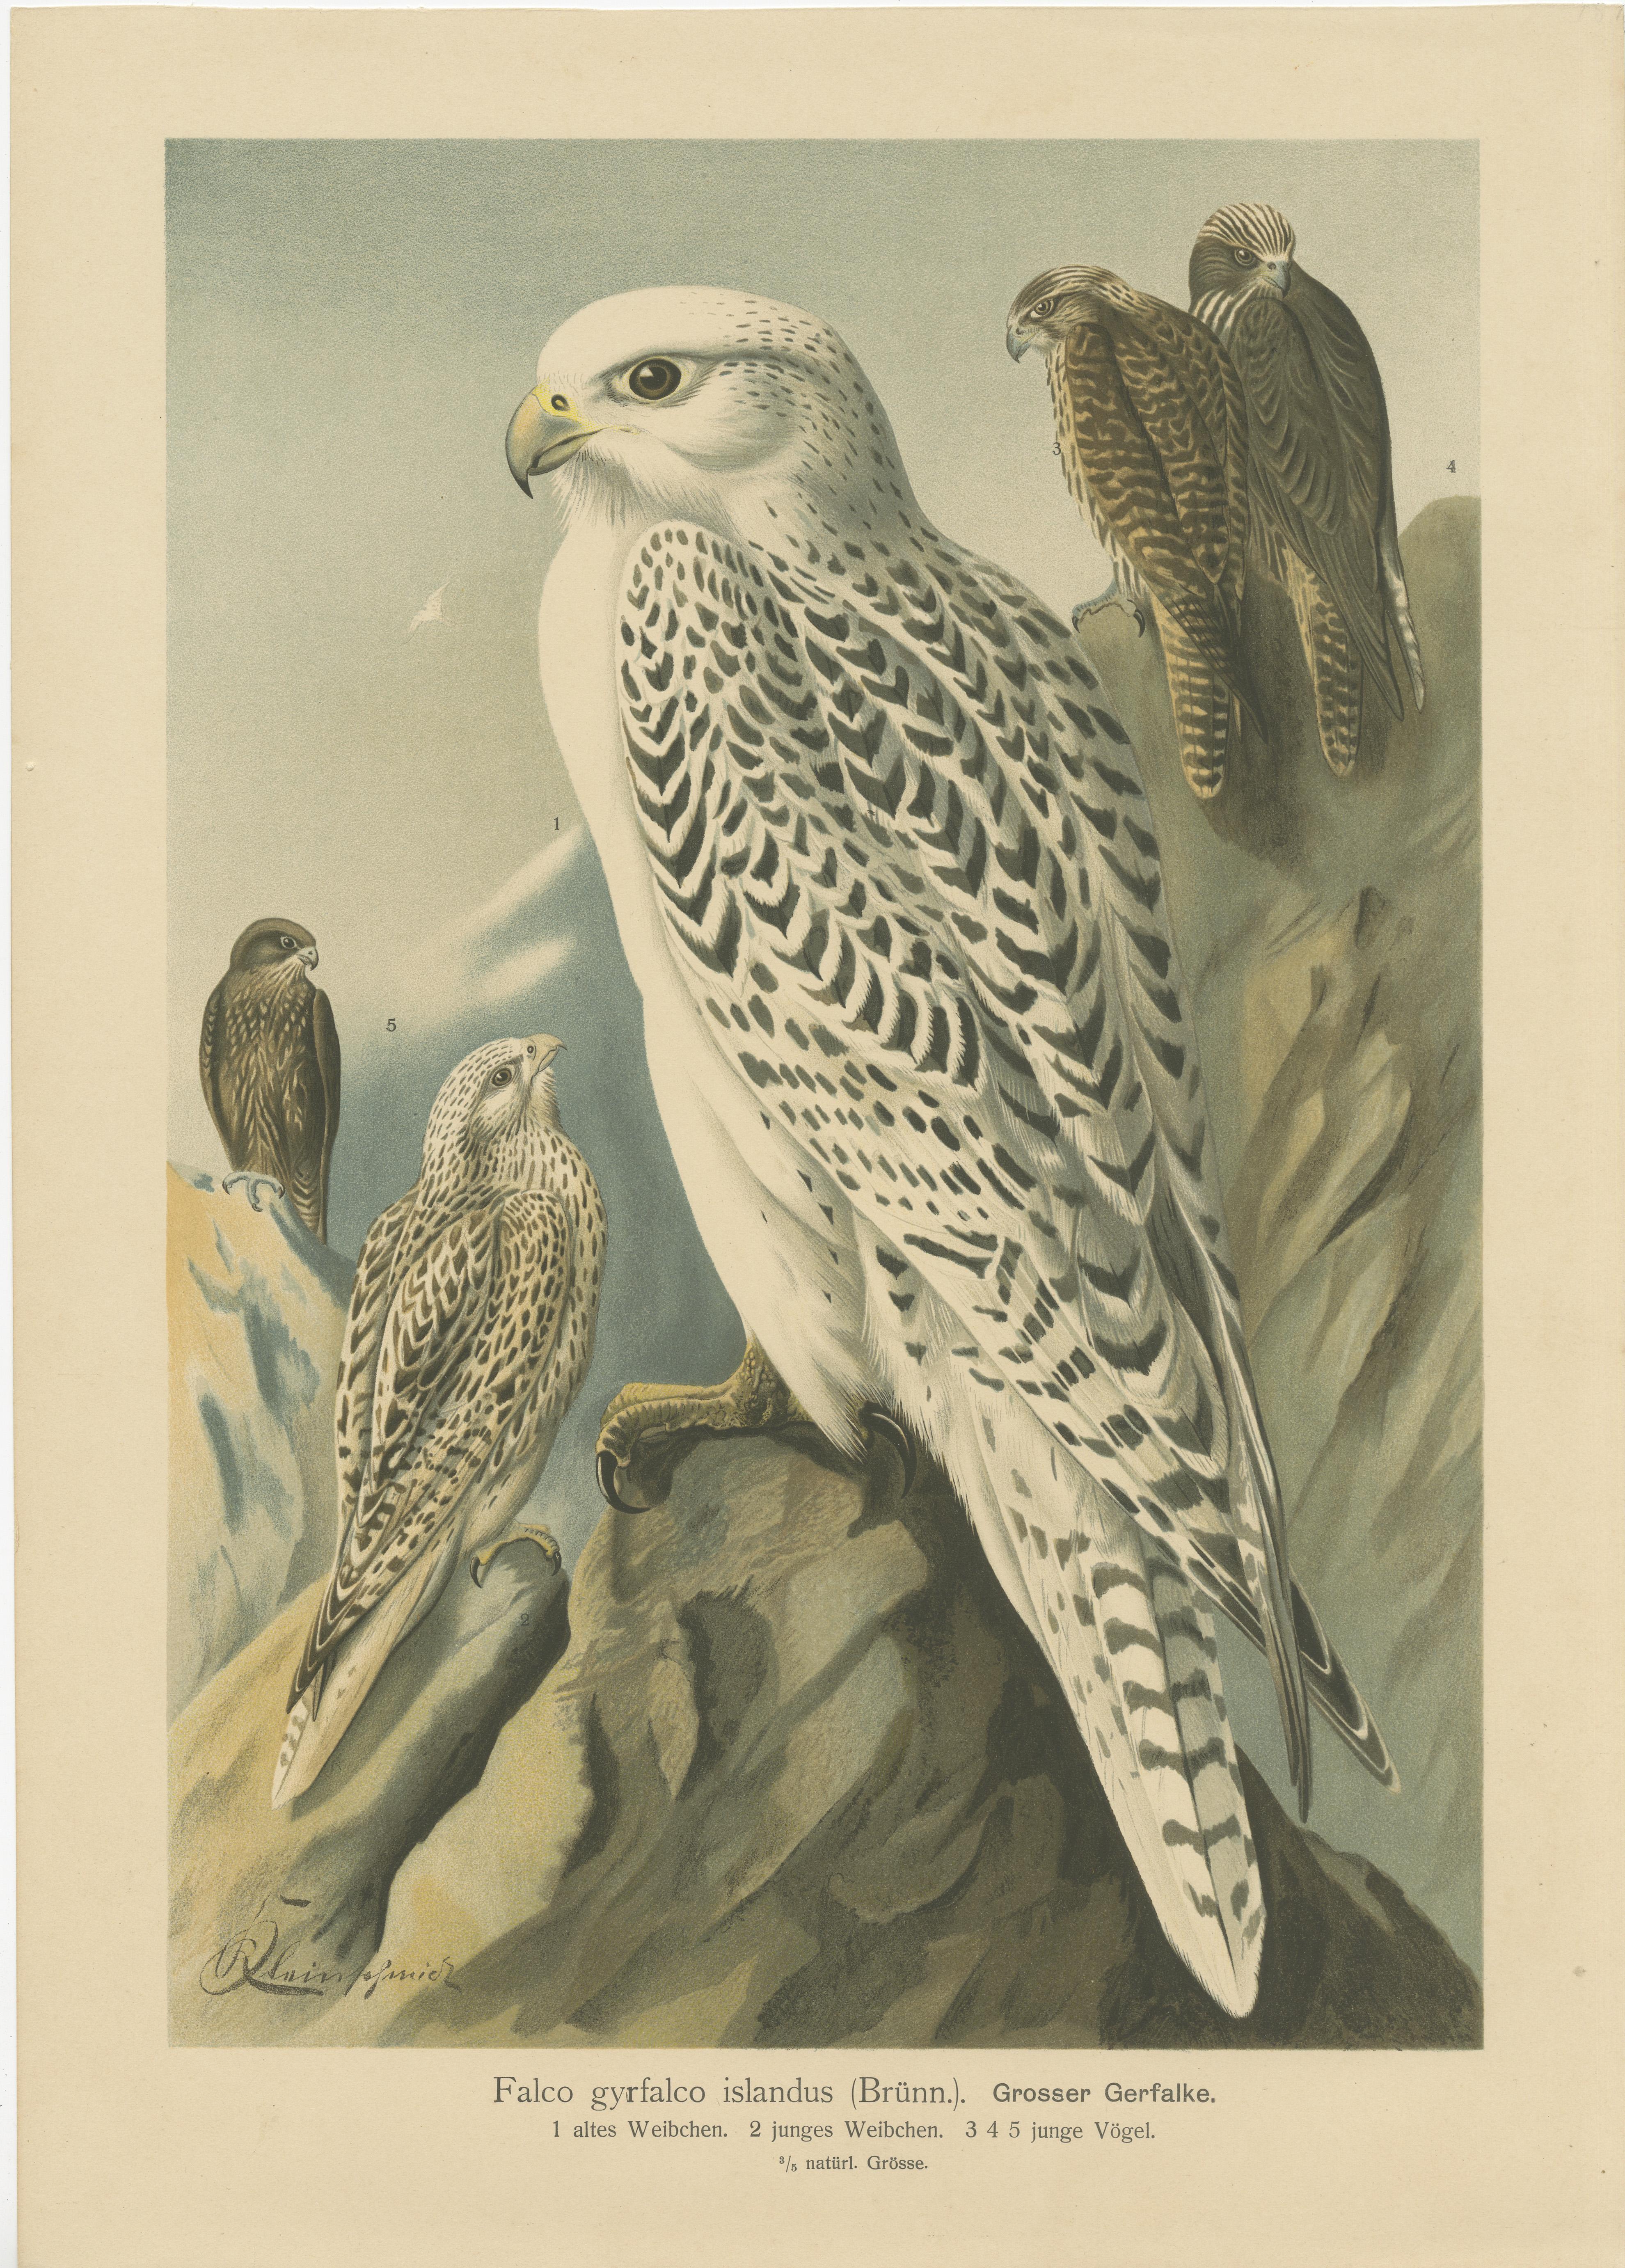 Die in der Collage abgebildeten Vögel sind allesamt Falken:

1. Der erste Druck zeigt den Wanderfalken (Falco rusticolus) in verschiedenen Lebensstadien oder Morphen der Art.

2. Der zweite Druck setzt das Thema 